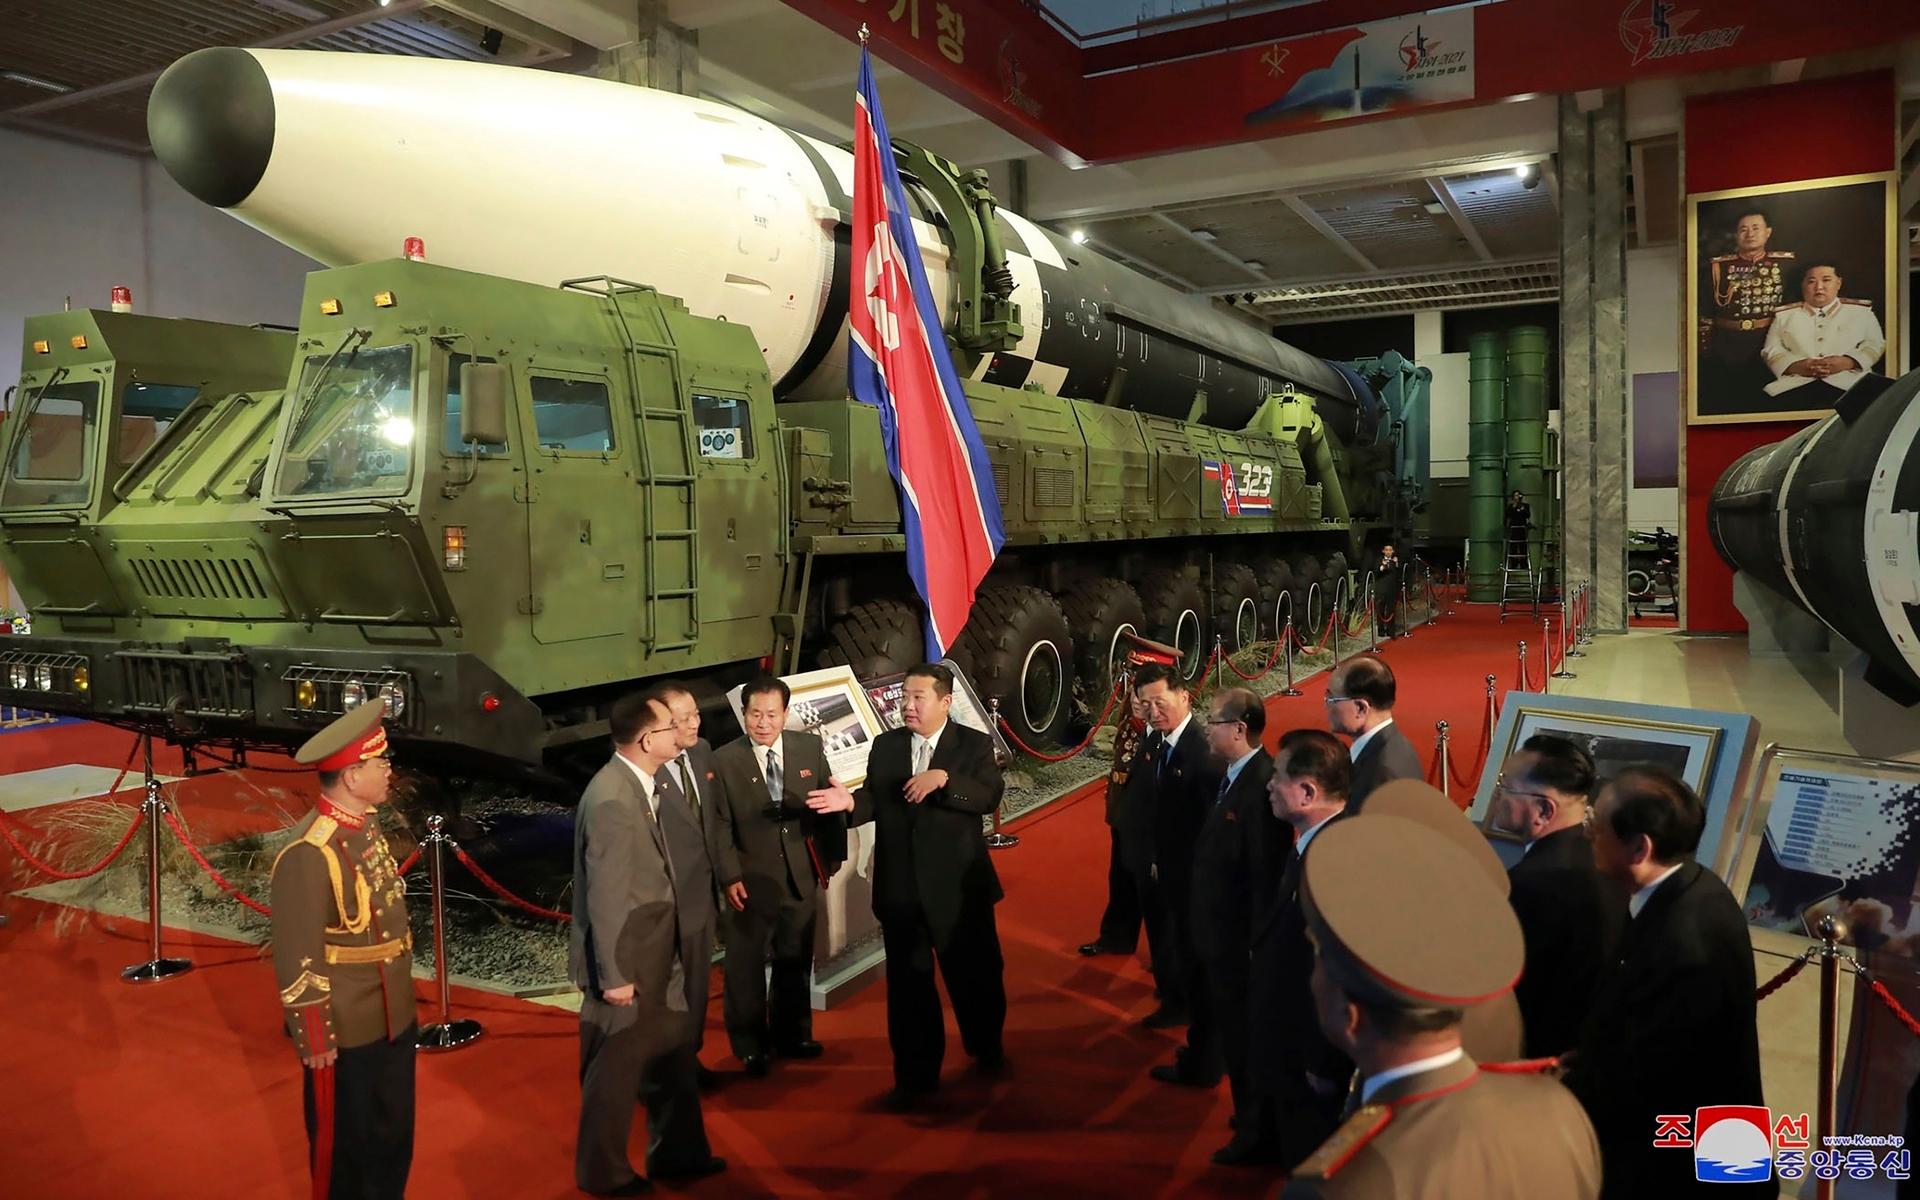 Nordkorea ska bygga en ”oövervinnelig” militär, sade diktatorn i sitt tal.